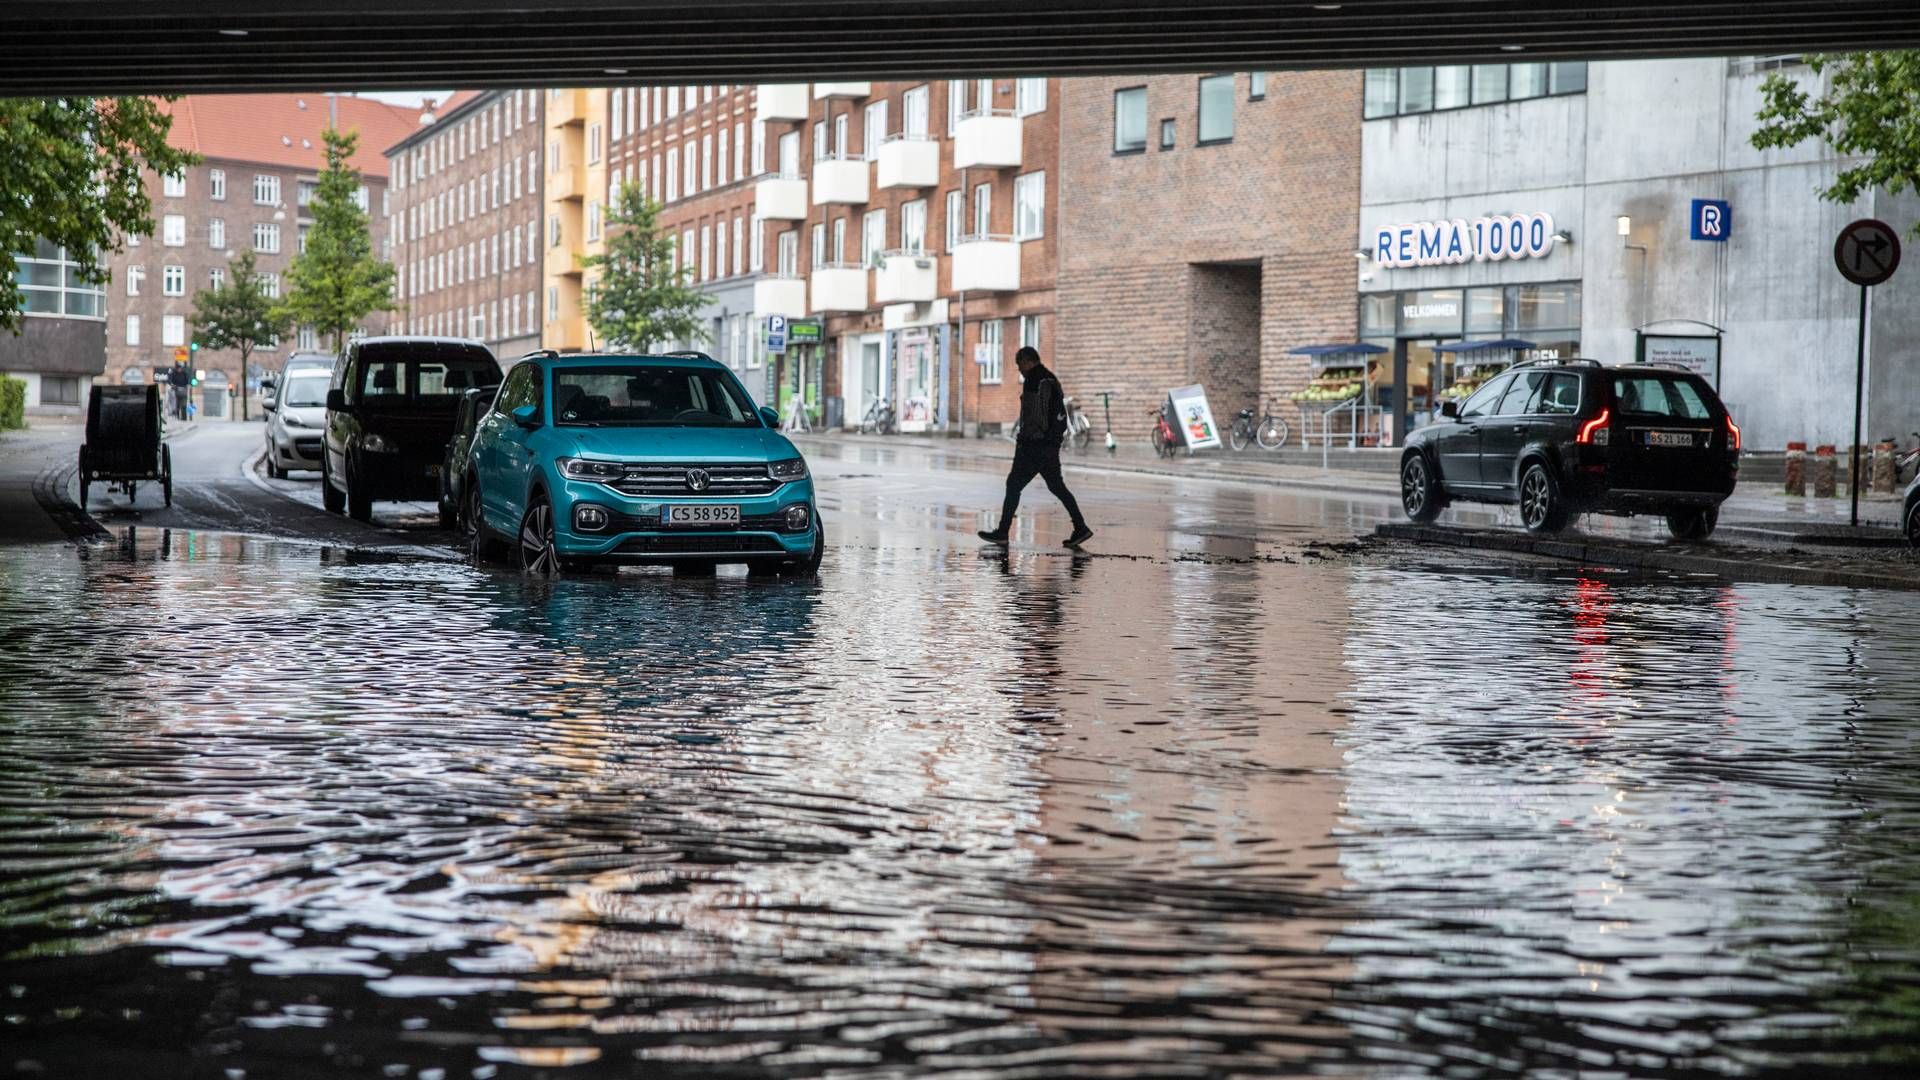 De kommunale beredskaber mangler både materiel, uddannelse og arbejdskraft til at beskytte danskerne mod fremtidige oversvømmelser. | Foto: Jens Hartmann